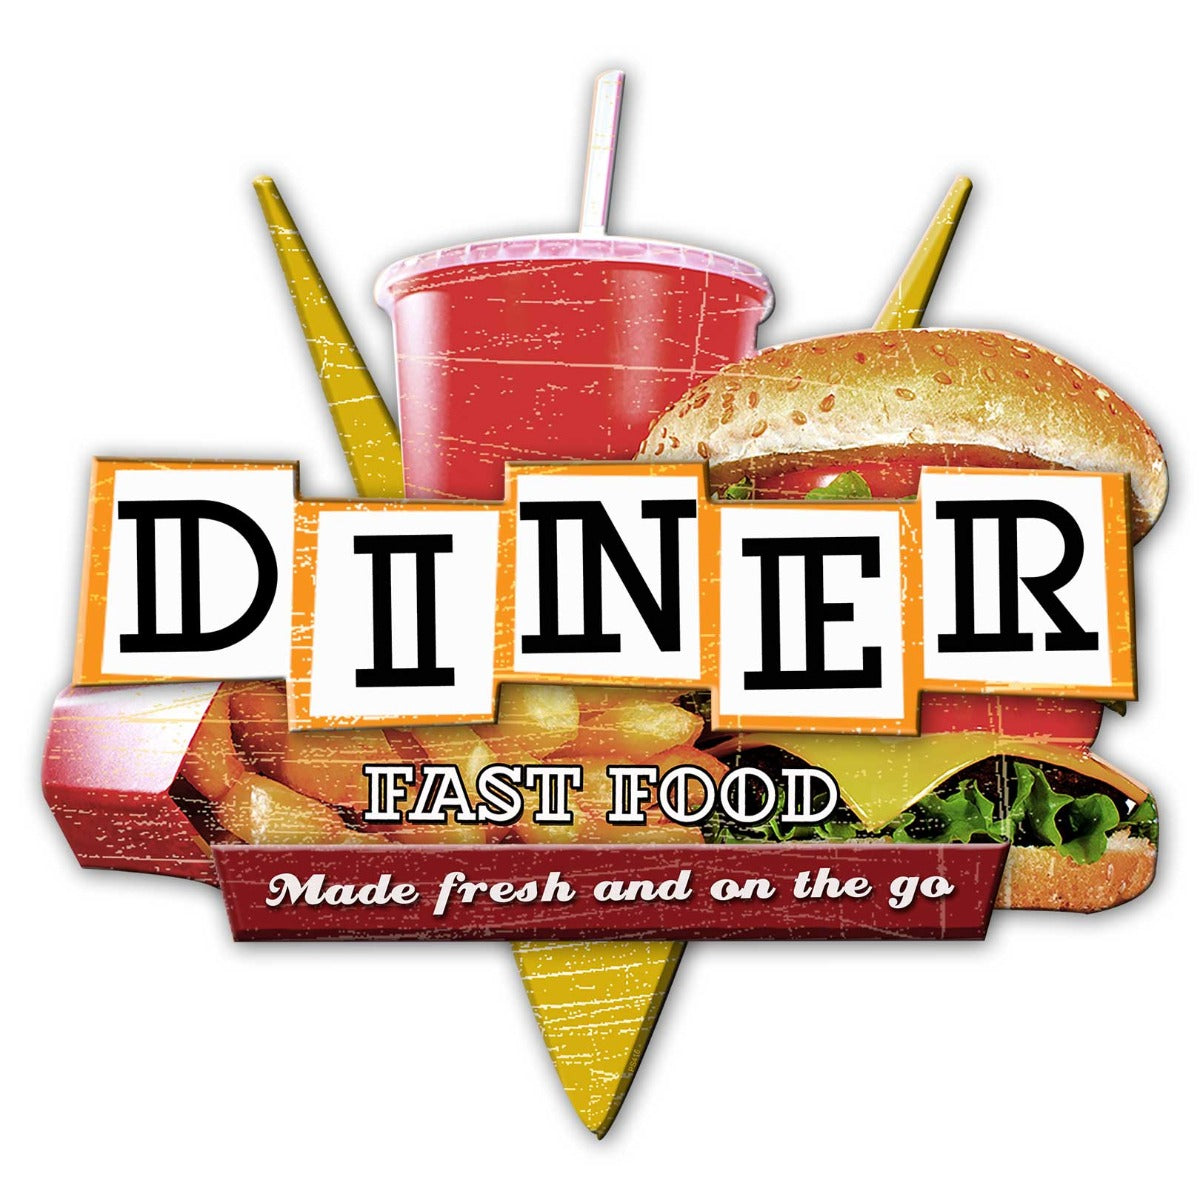 Fast Food Diner Vintage Sign